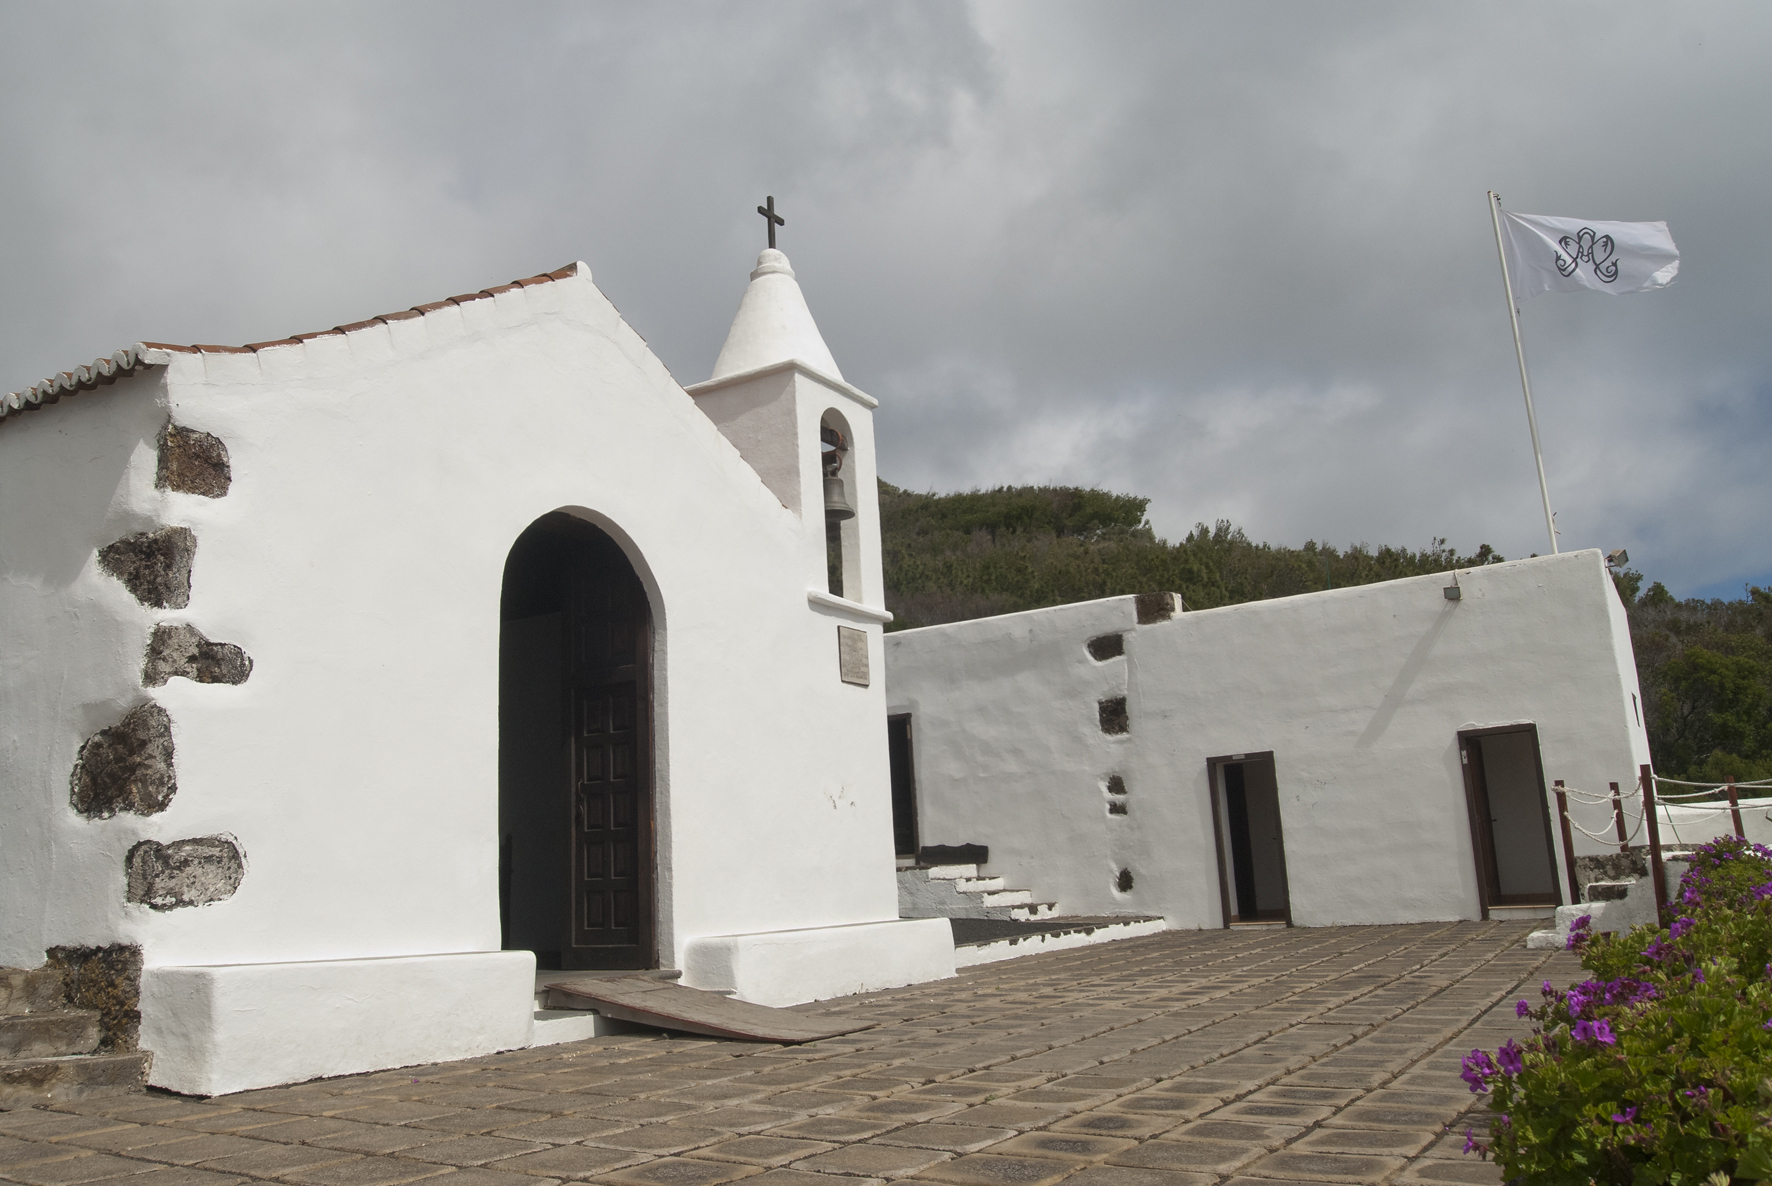 Las campanas de las parroquias de la Isla repicarán al unísono a las 12:00 horas de este sábado en honor a Nuestra Señora de los Reyes